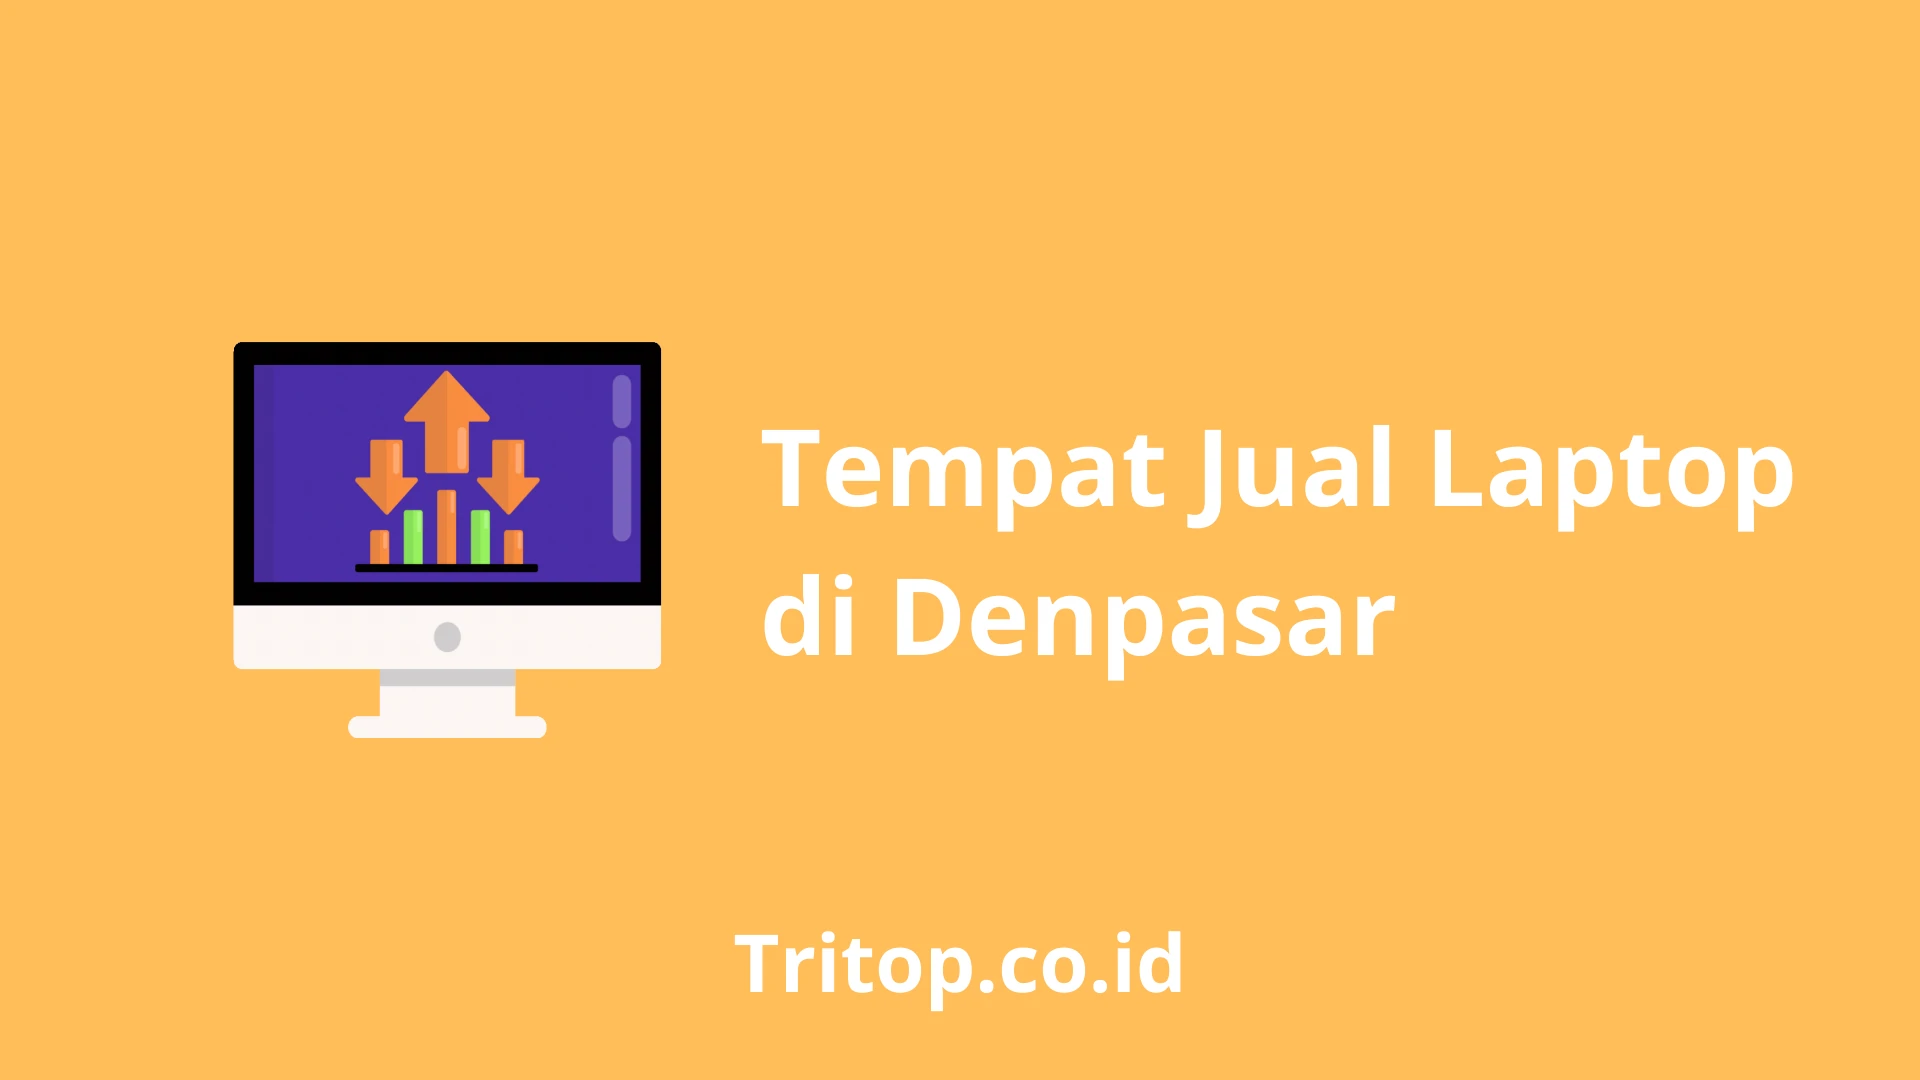 Tempat Jual Laptop di Denpasar Tritop.co.id